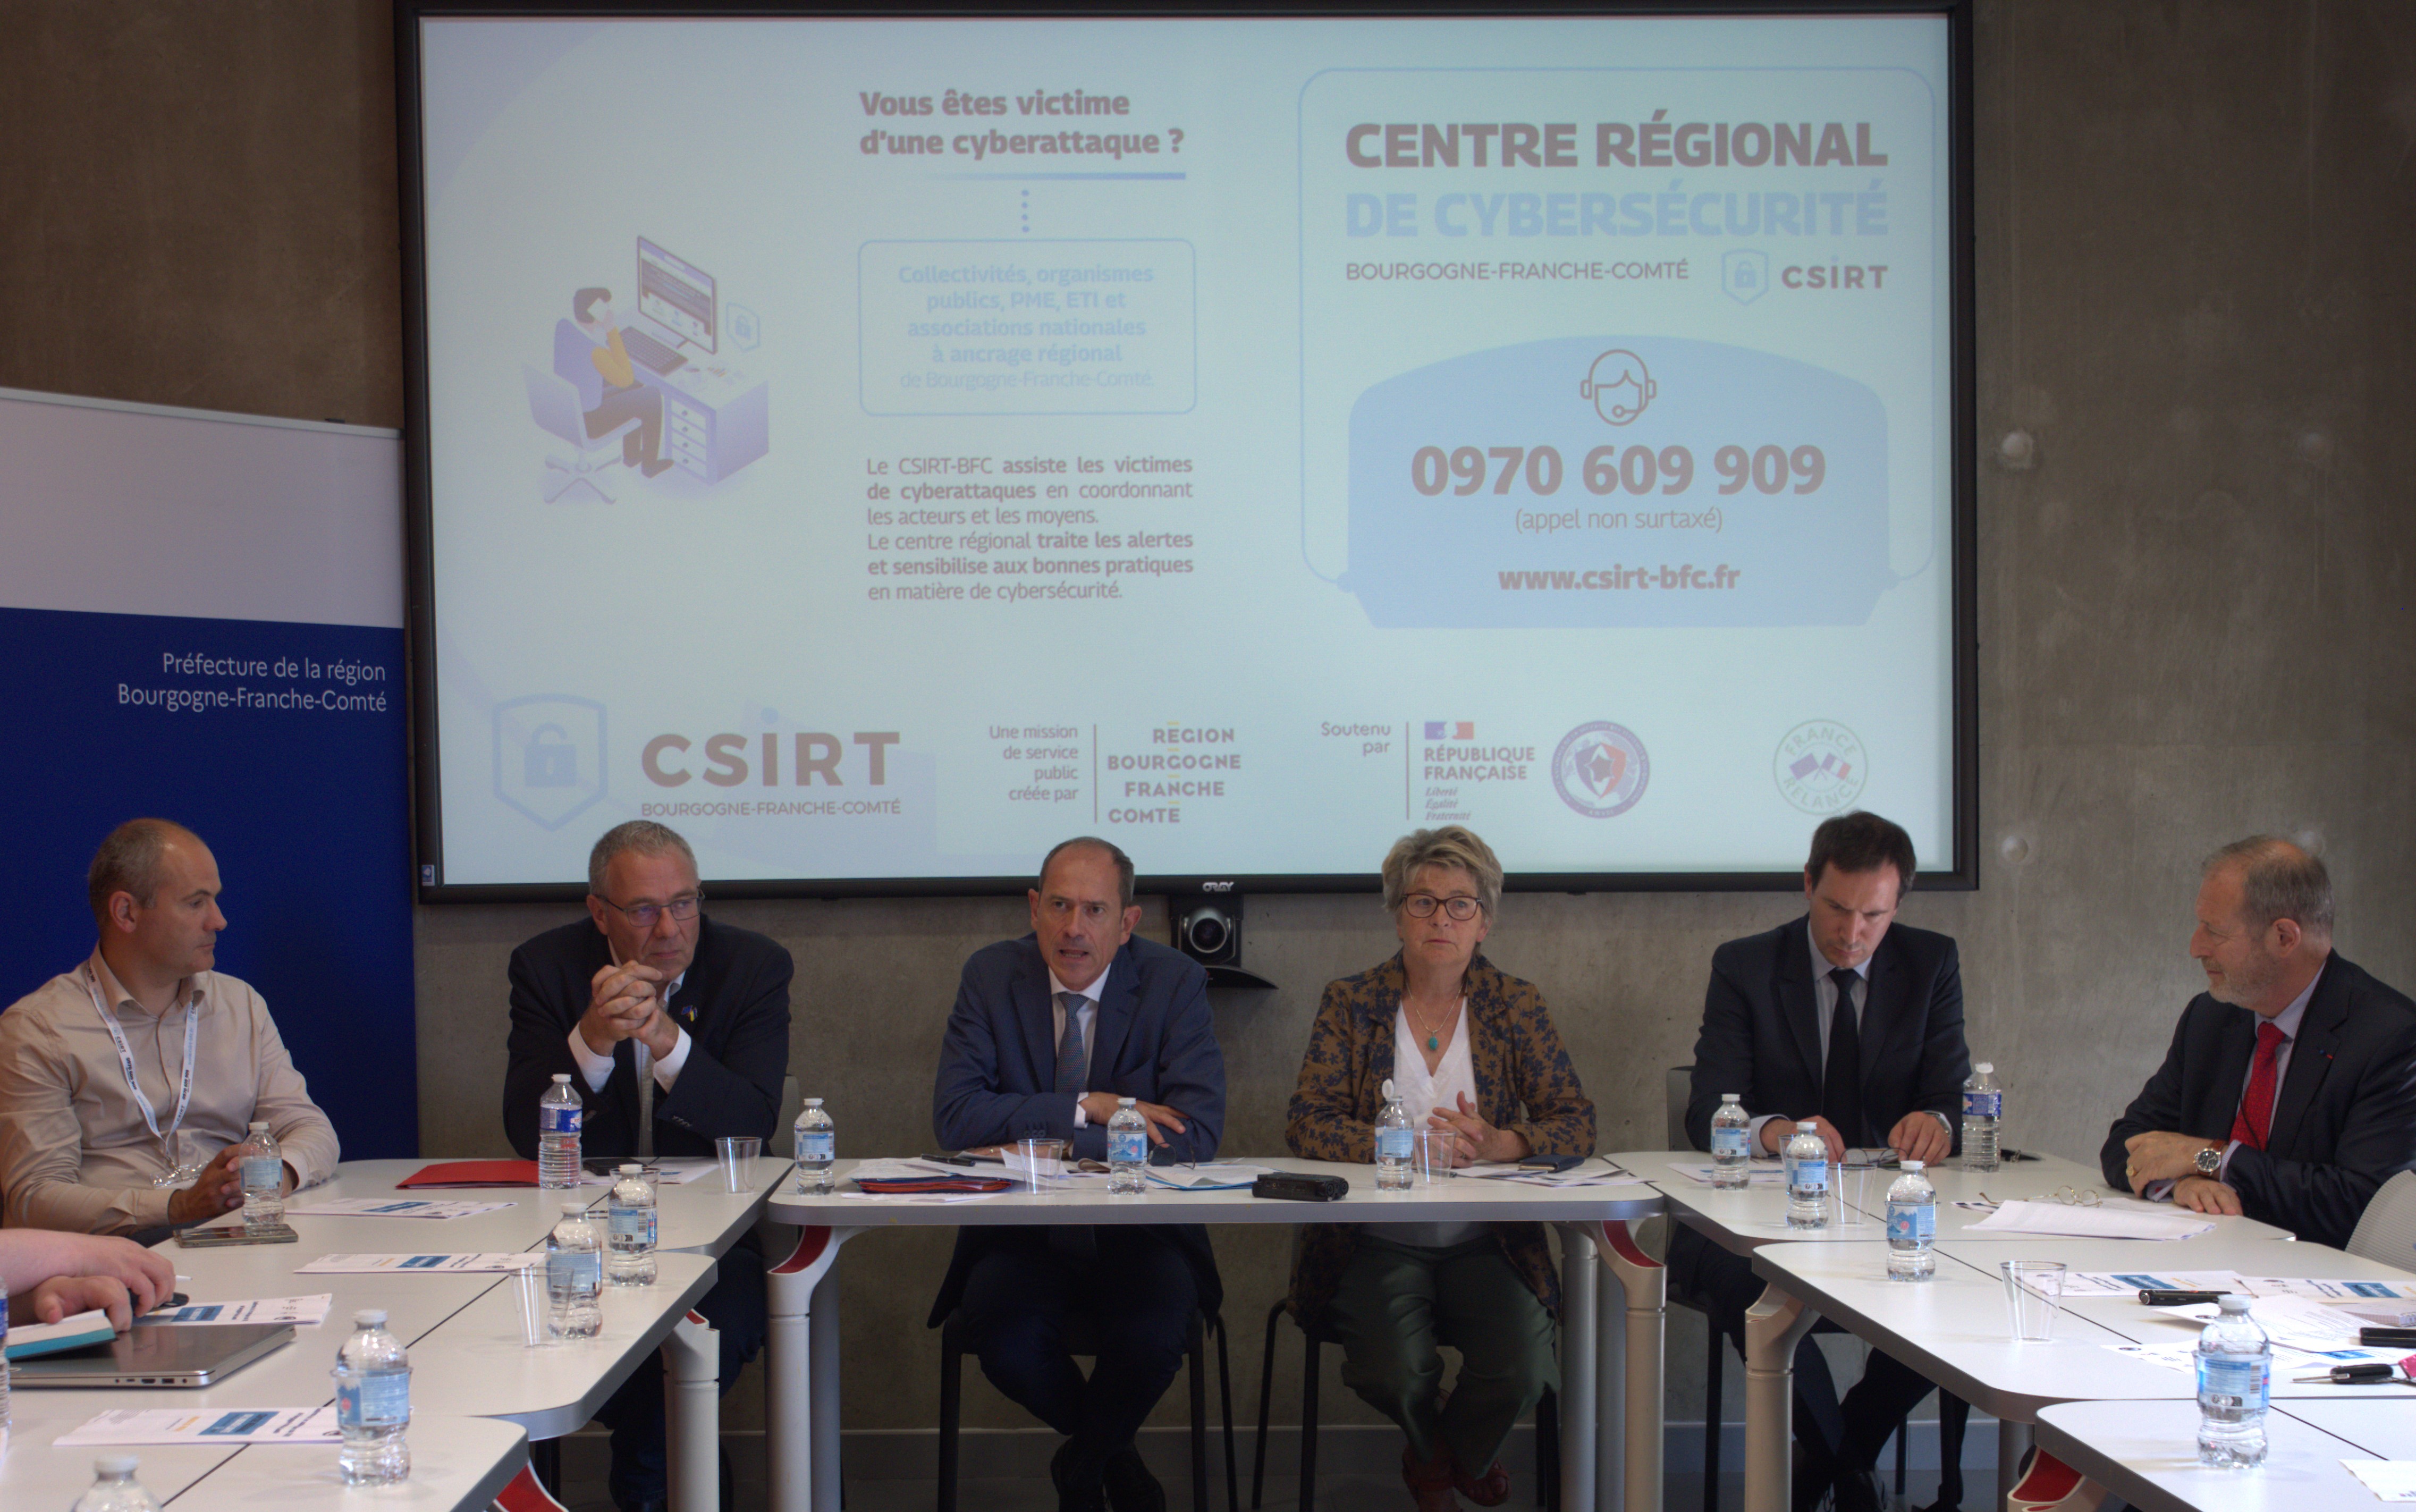 Cybersécurité : la Bourgogne-Franche-Comté mise sur l'agence CSIRT pour accompagner les collectivités et les PME